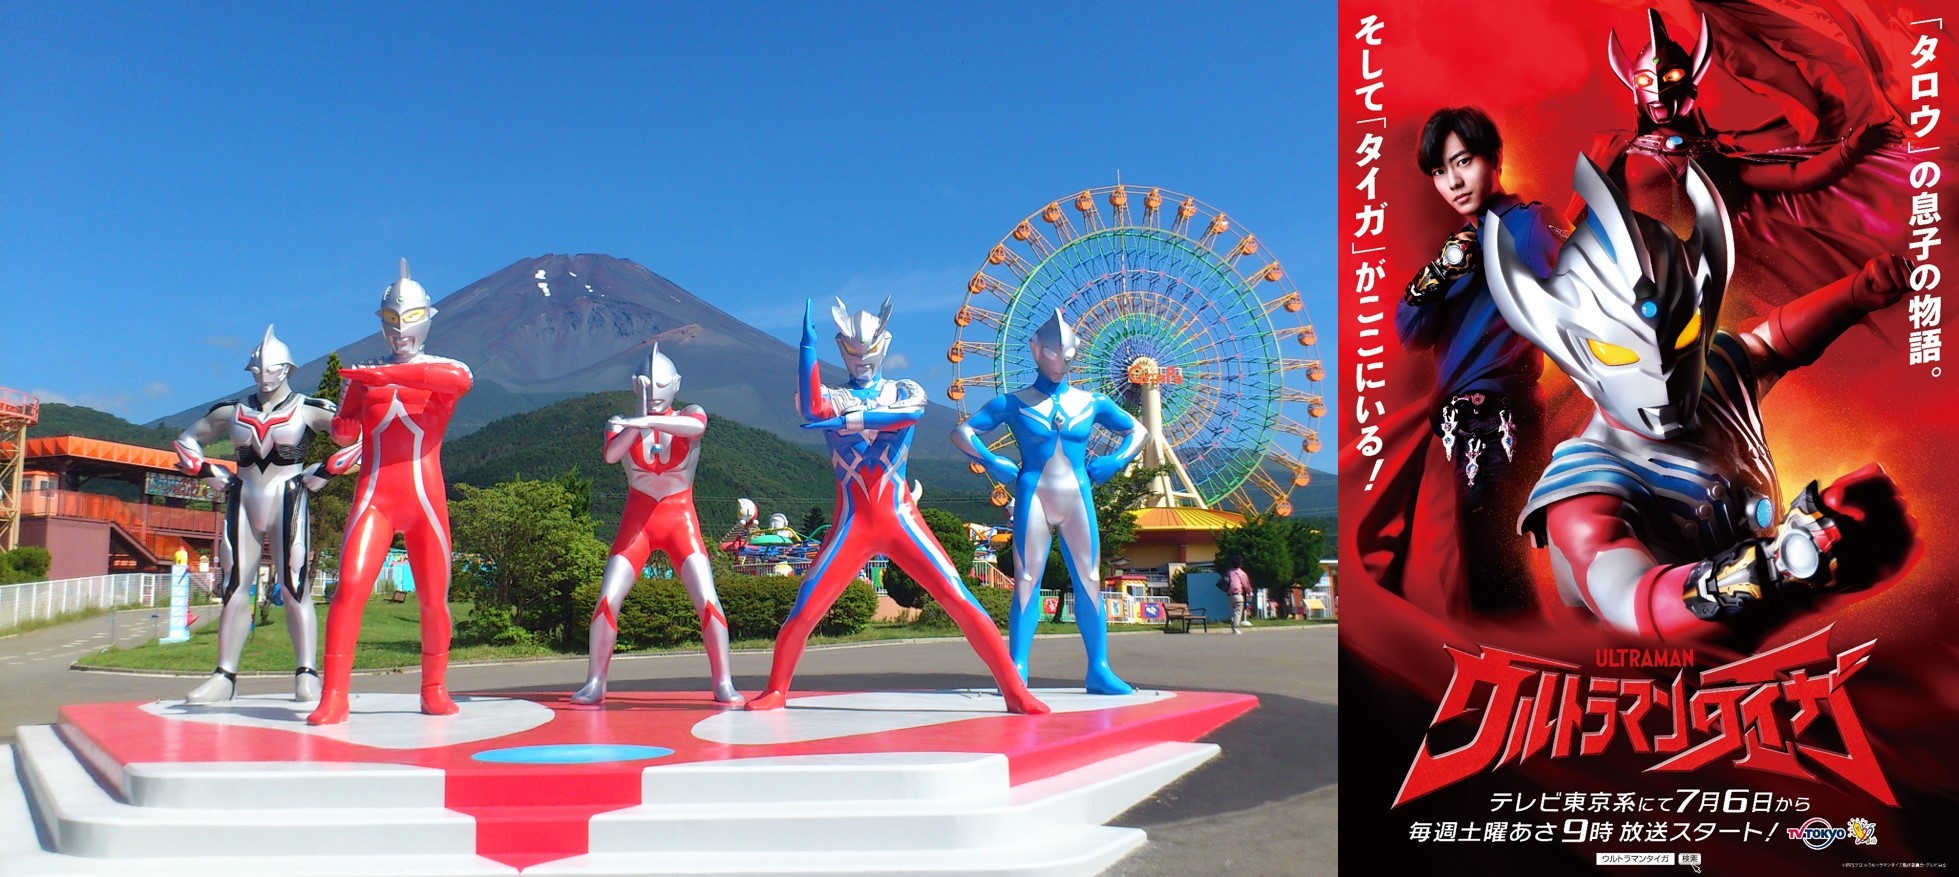 ウルトラマンタイガ と ウルトラマンｒ ｂ のヒーローが登場 富士山二合目の遊園地で限定spイベント Spice エンタメ特化型情報メディア スパイス